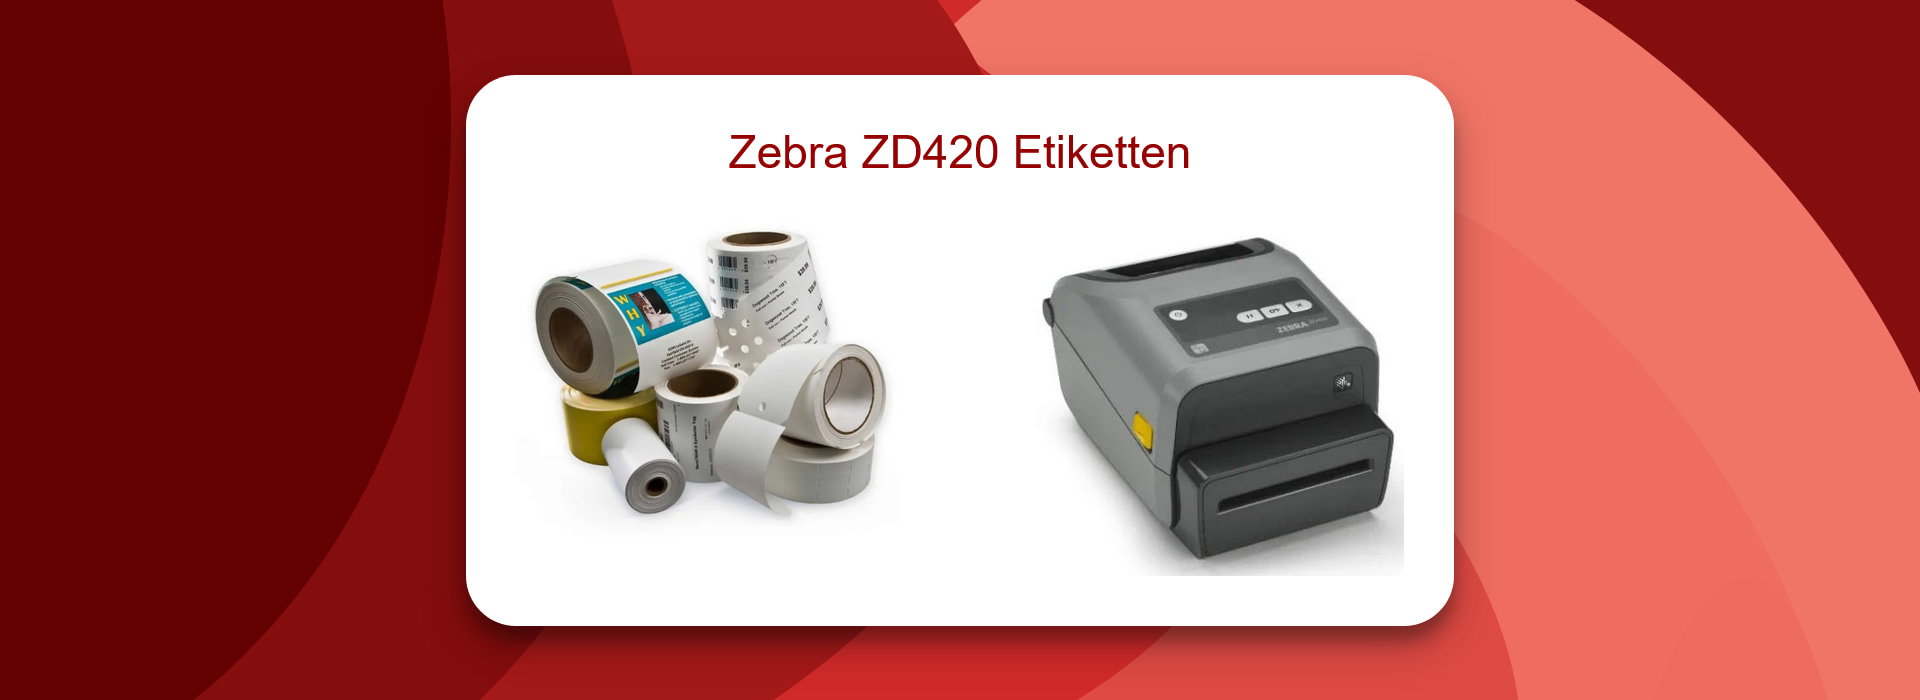 Effizienzsteigerung mit Zebra ZD420 Etiketten